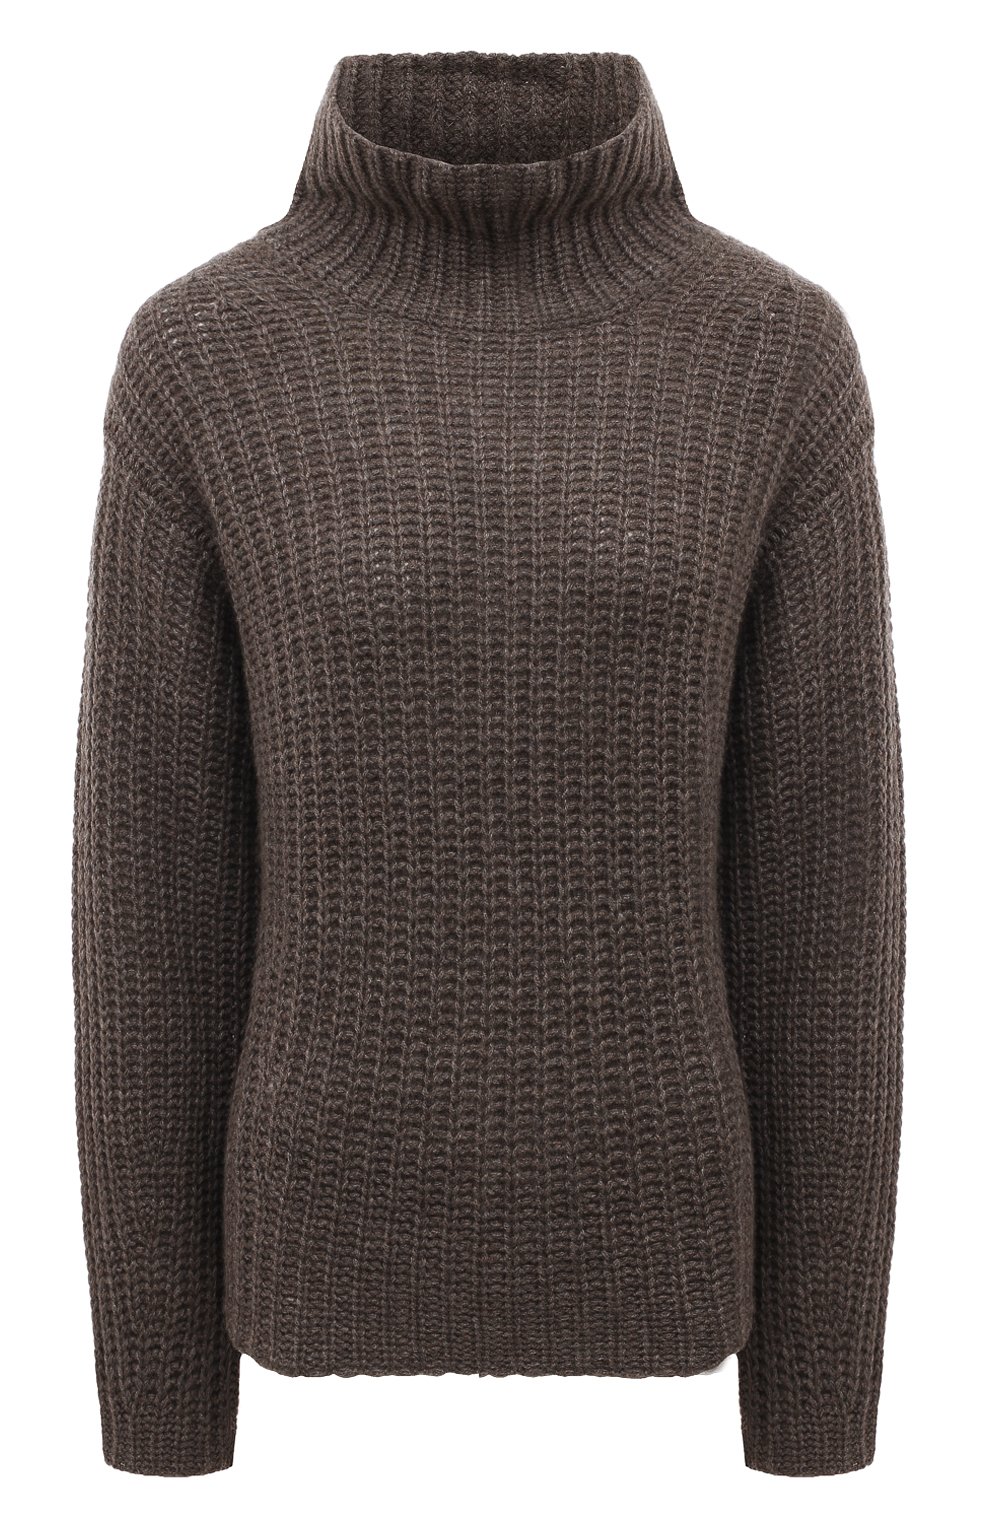 Фото Женский коричневый кашемировый свитер FTC, арт. 920-0591 Китай (Китайская Народная Республика) 920-0591 